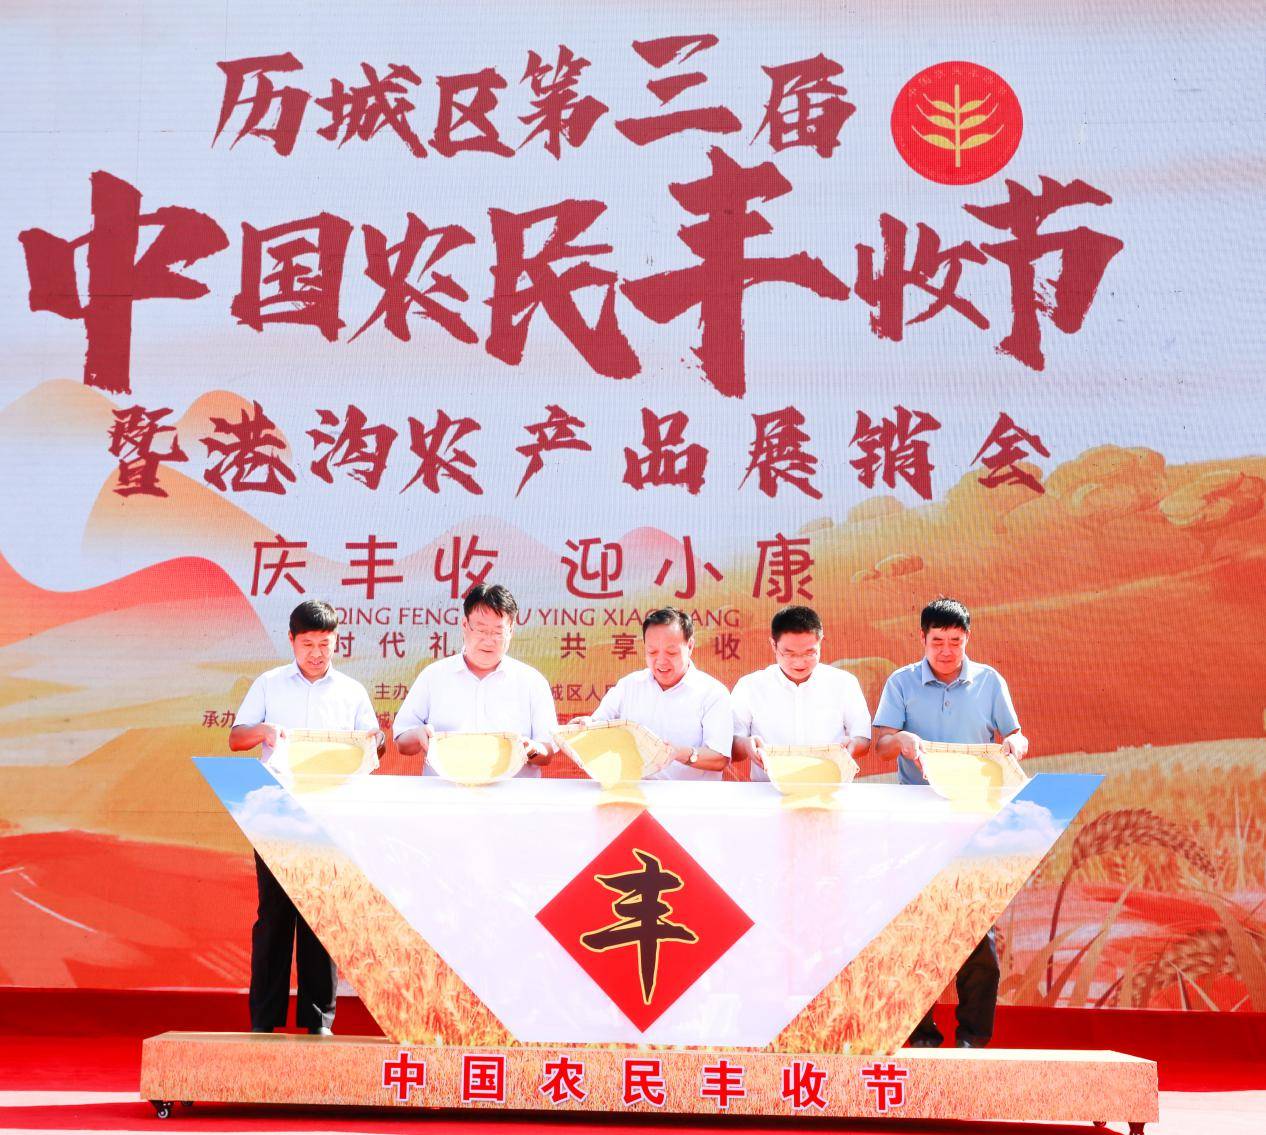 第三届中国农民丰收节图片